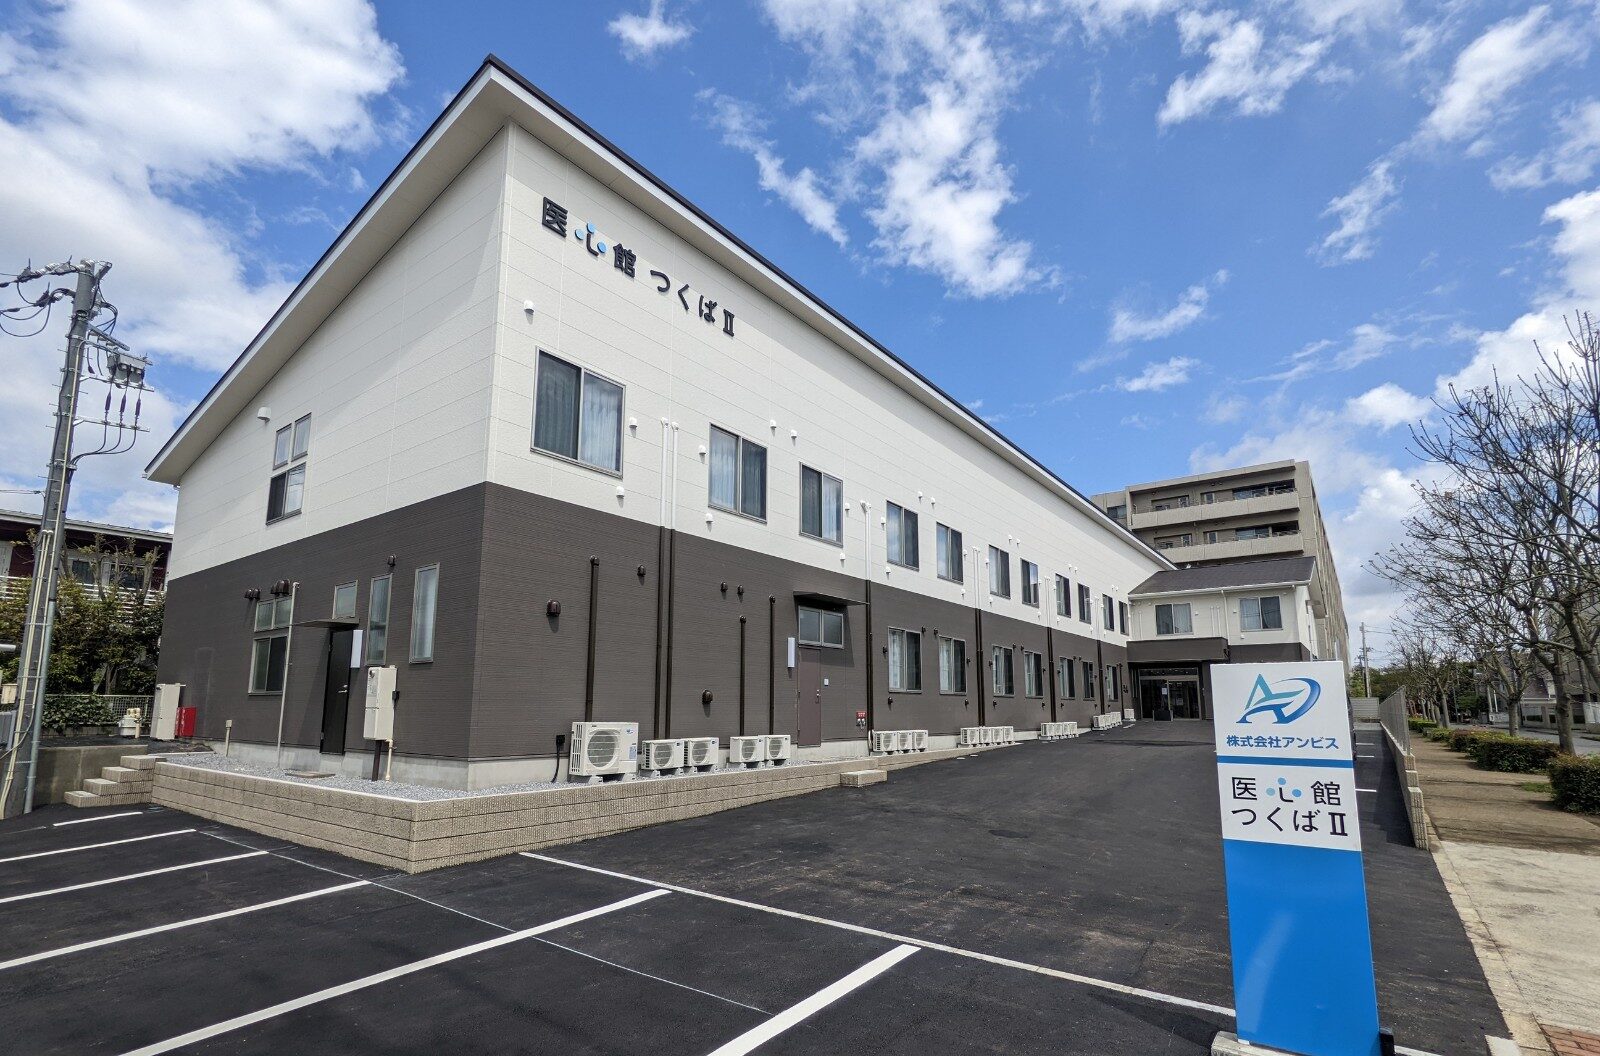 茨城県では３施設目となる有料老人ホーム「医心館 つくばⅡ」をオープンしました